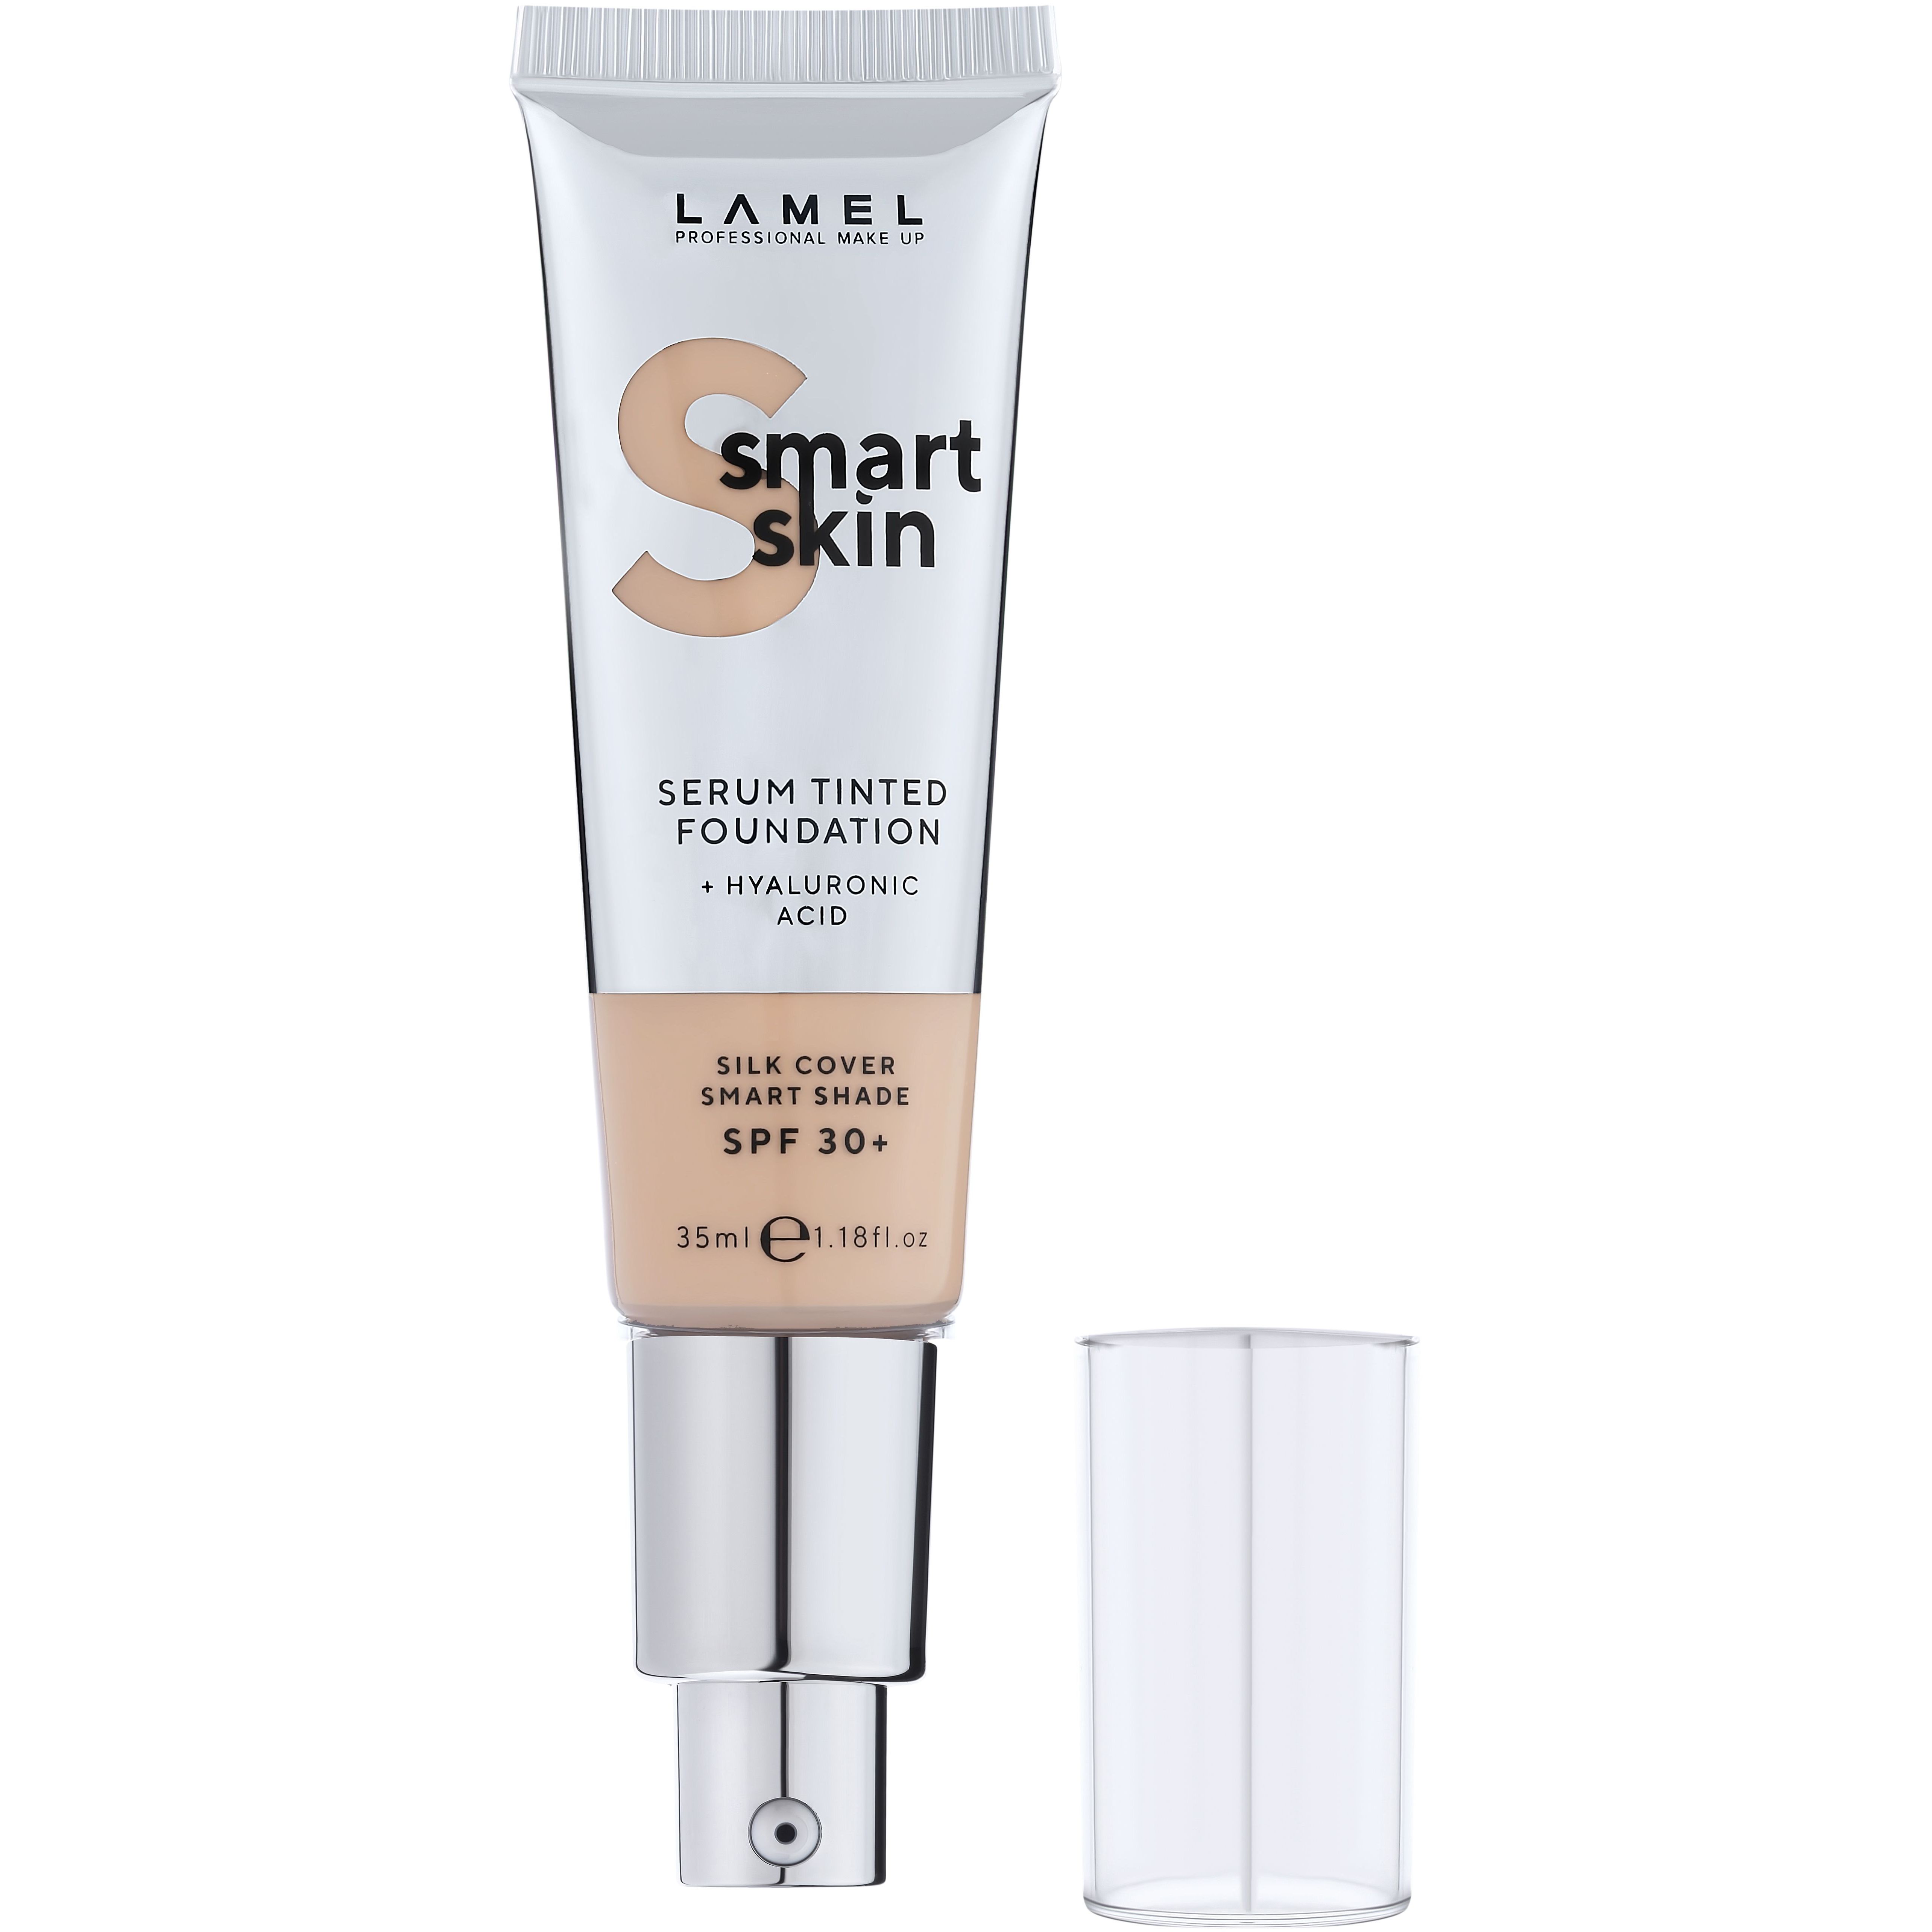 Тональная основа-сыворотка Lamel Smart Skin Serum Tinted Foundation тон 402, 35 мл - фото 3